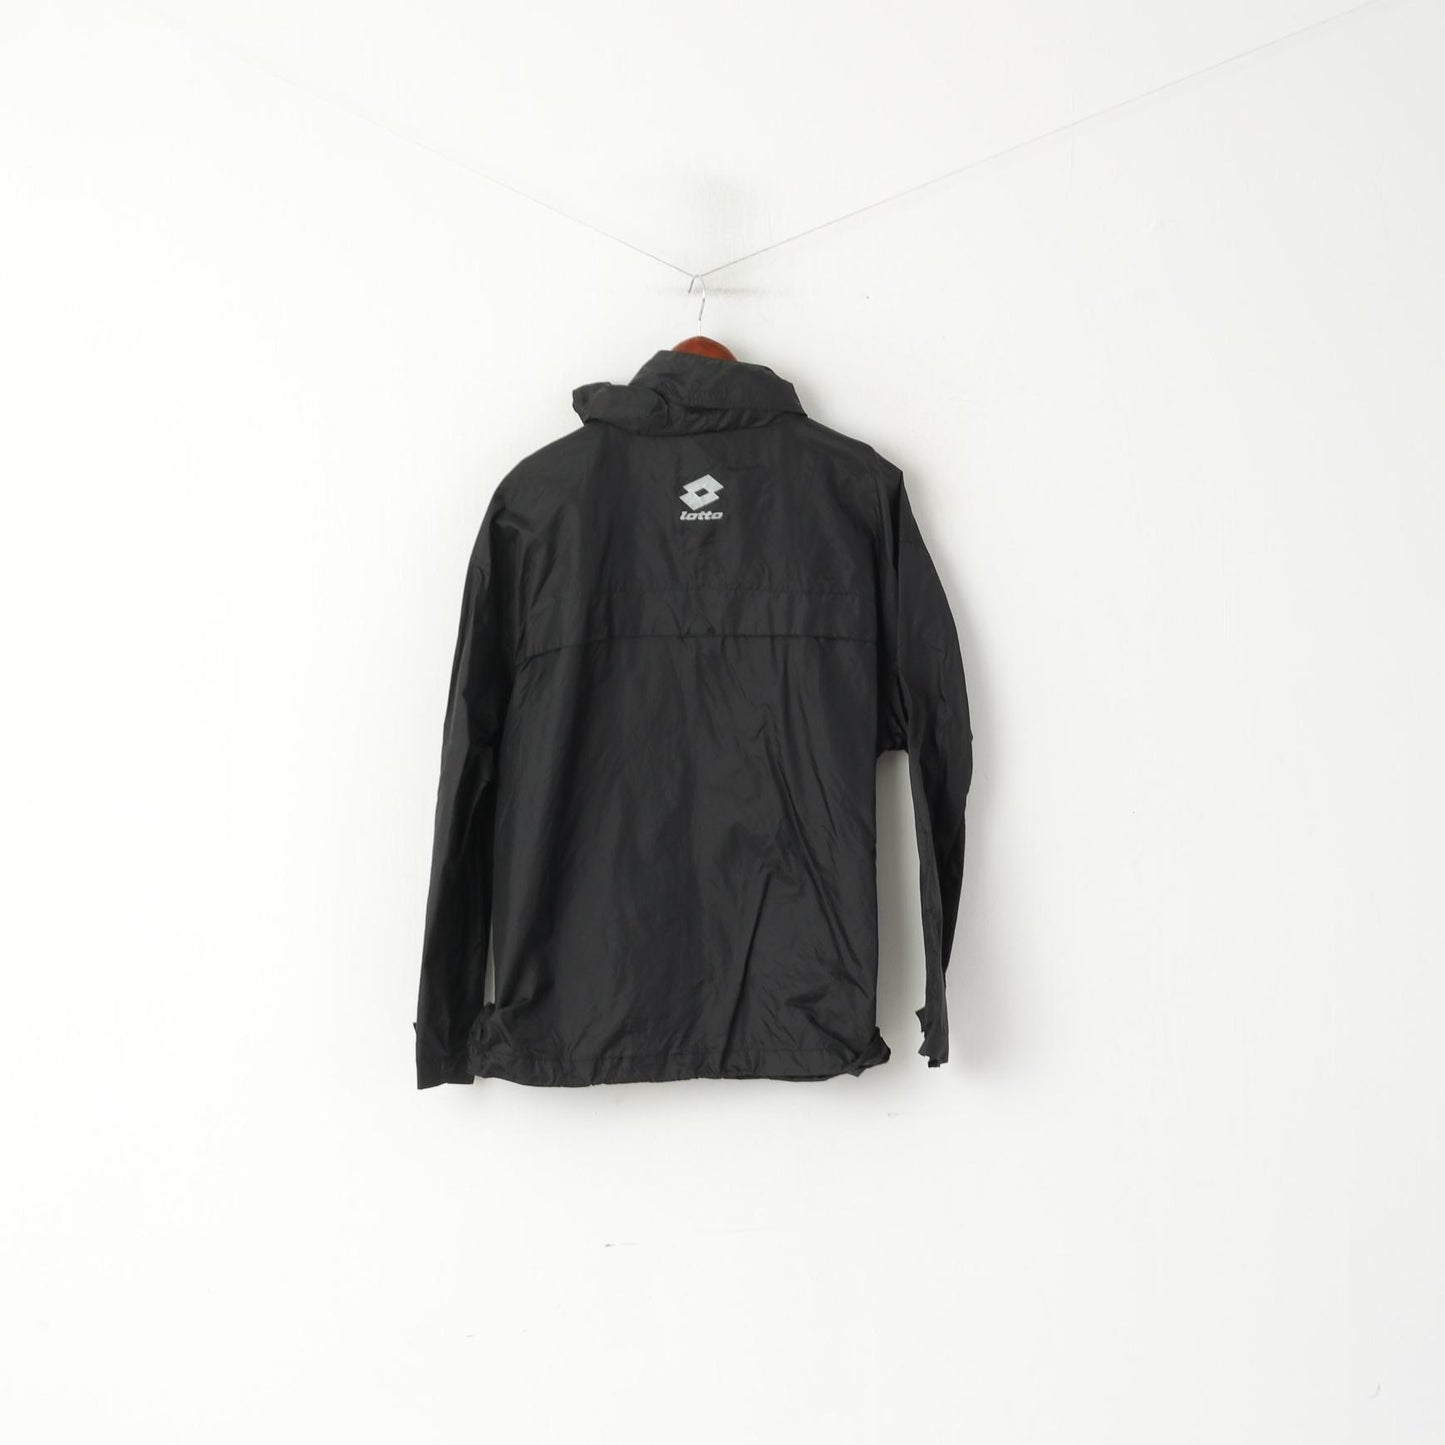 Lotto Men S Jacket Black Nylon Waterproof Sportswear Hidden Hood Top